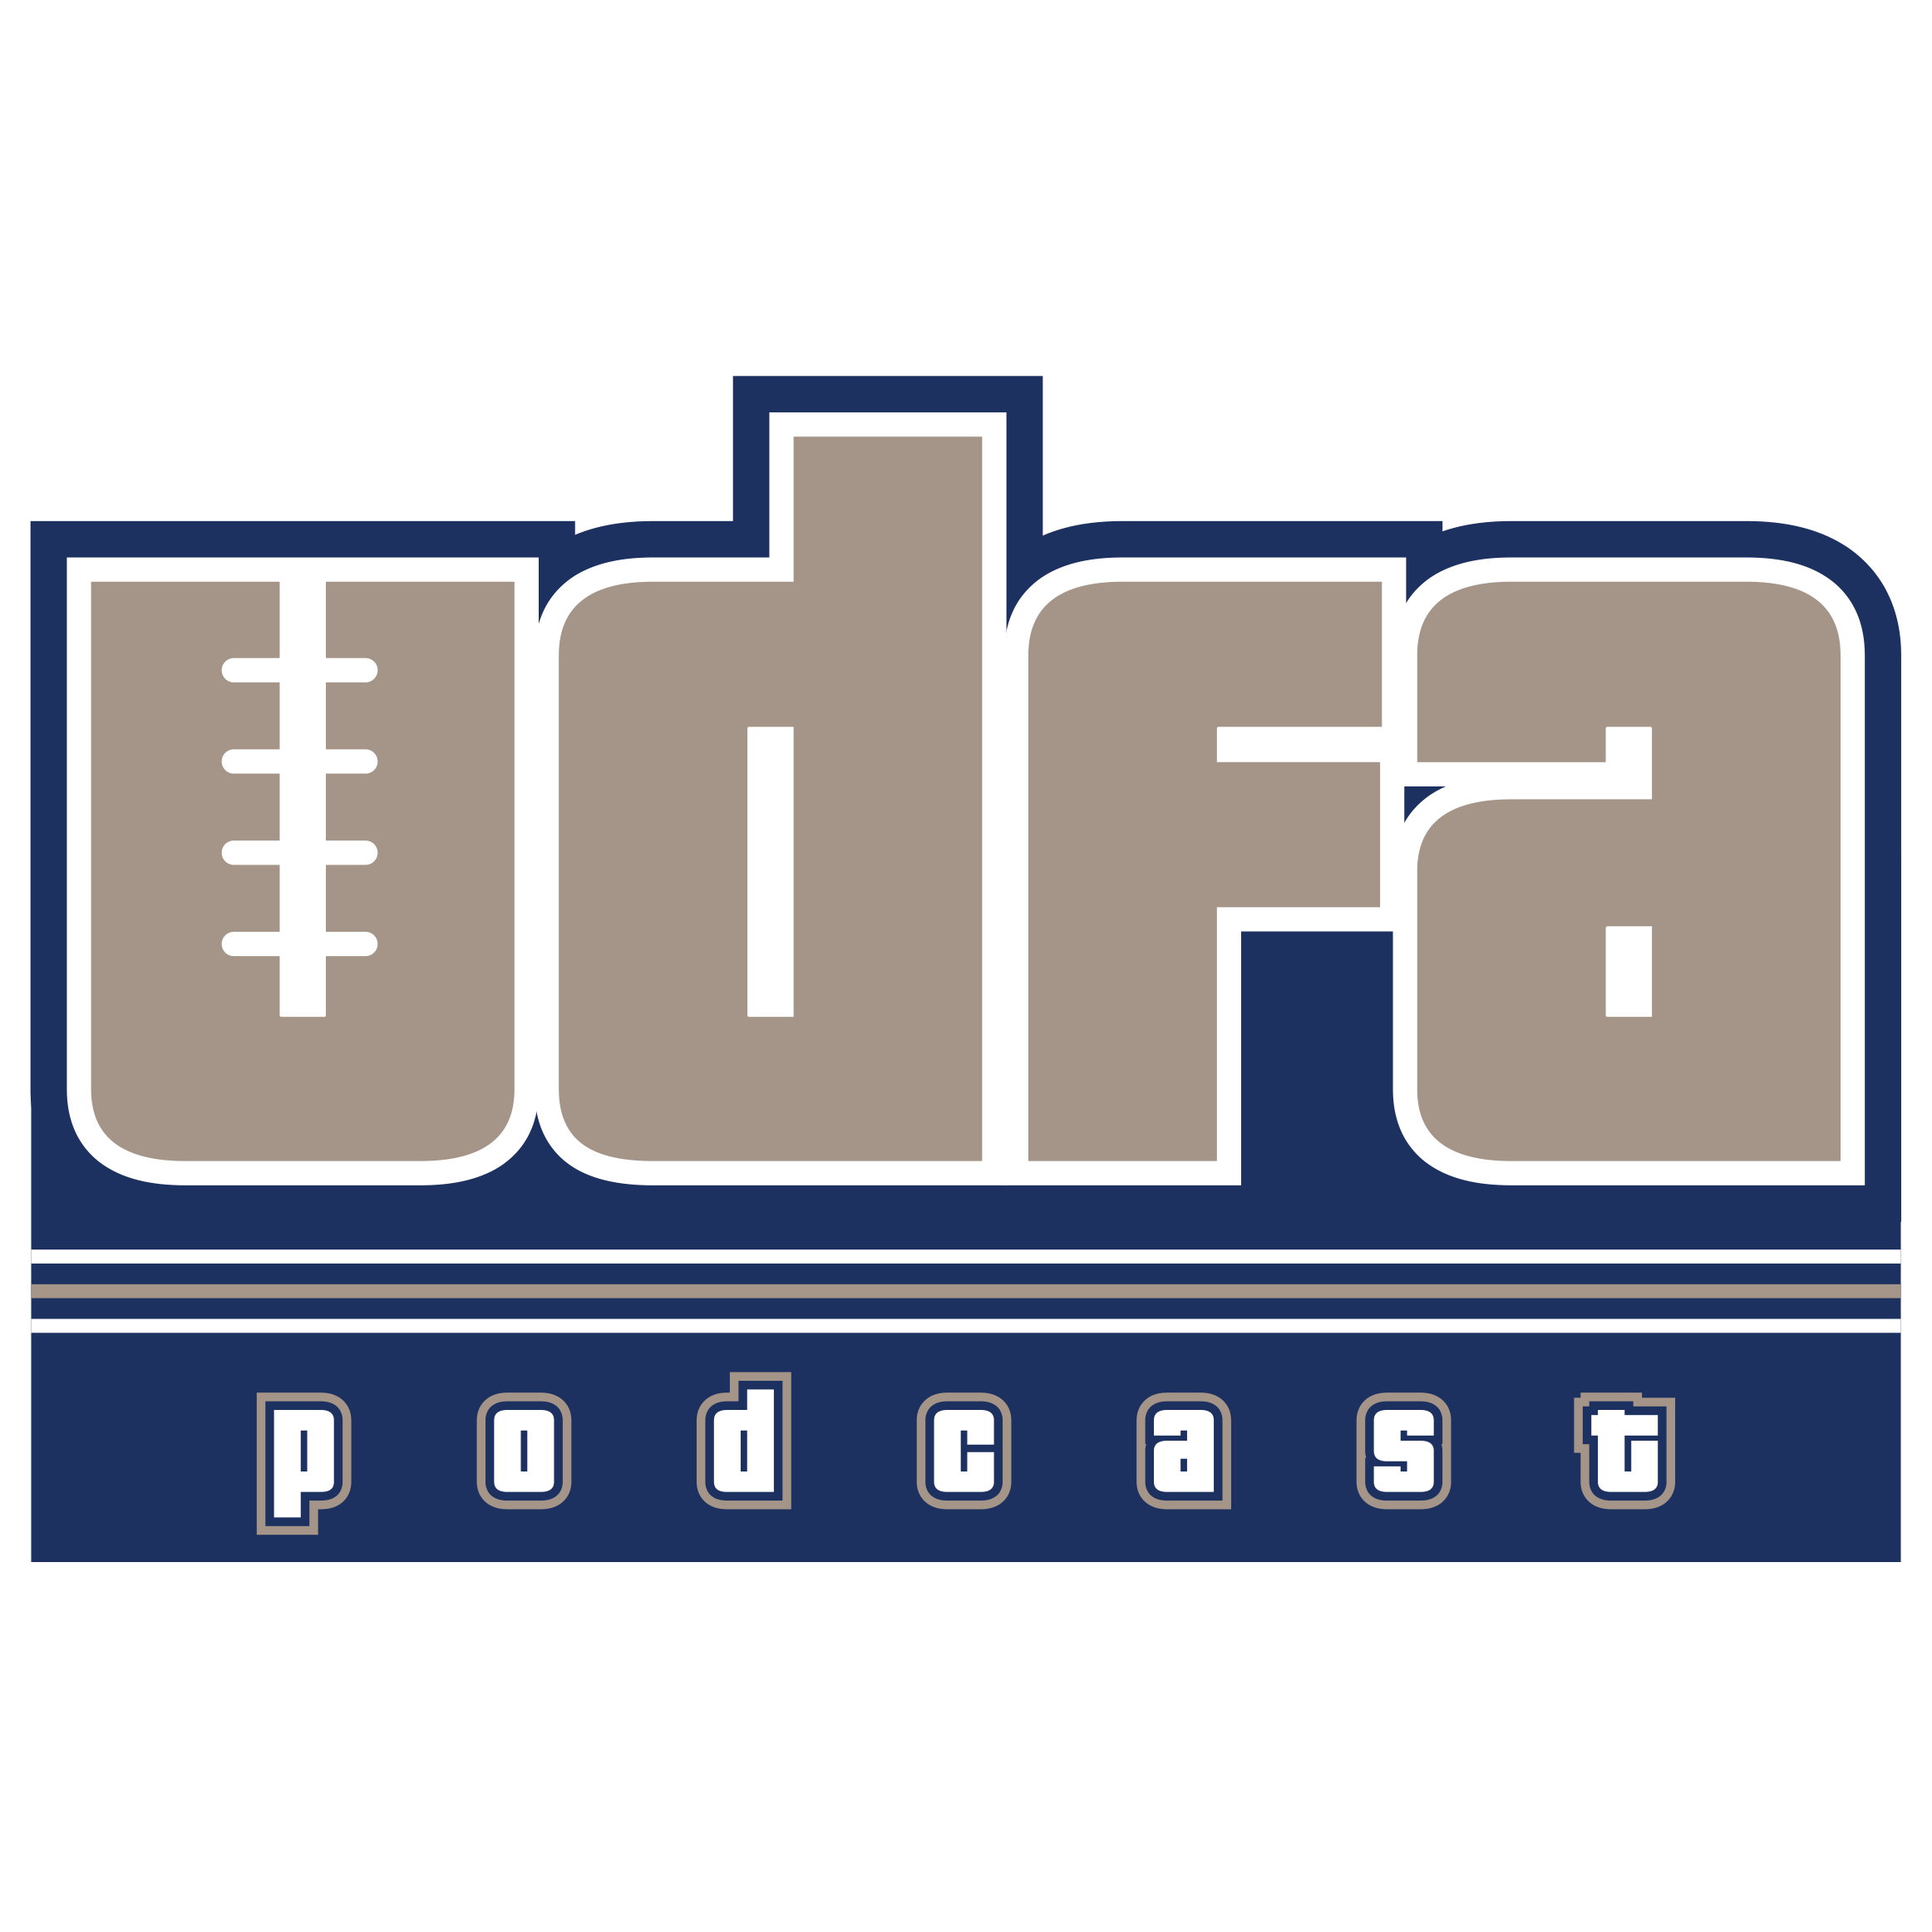 UDFA Podcast: NFL Draft and Fantasy Football